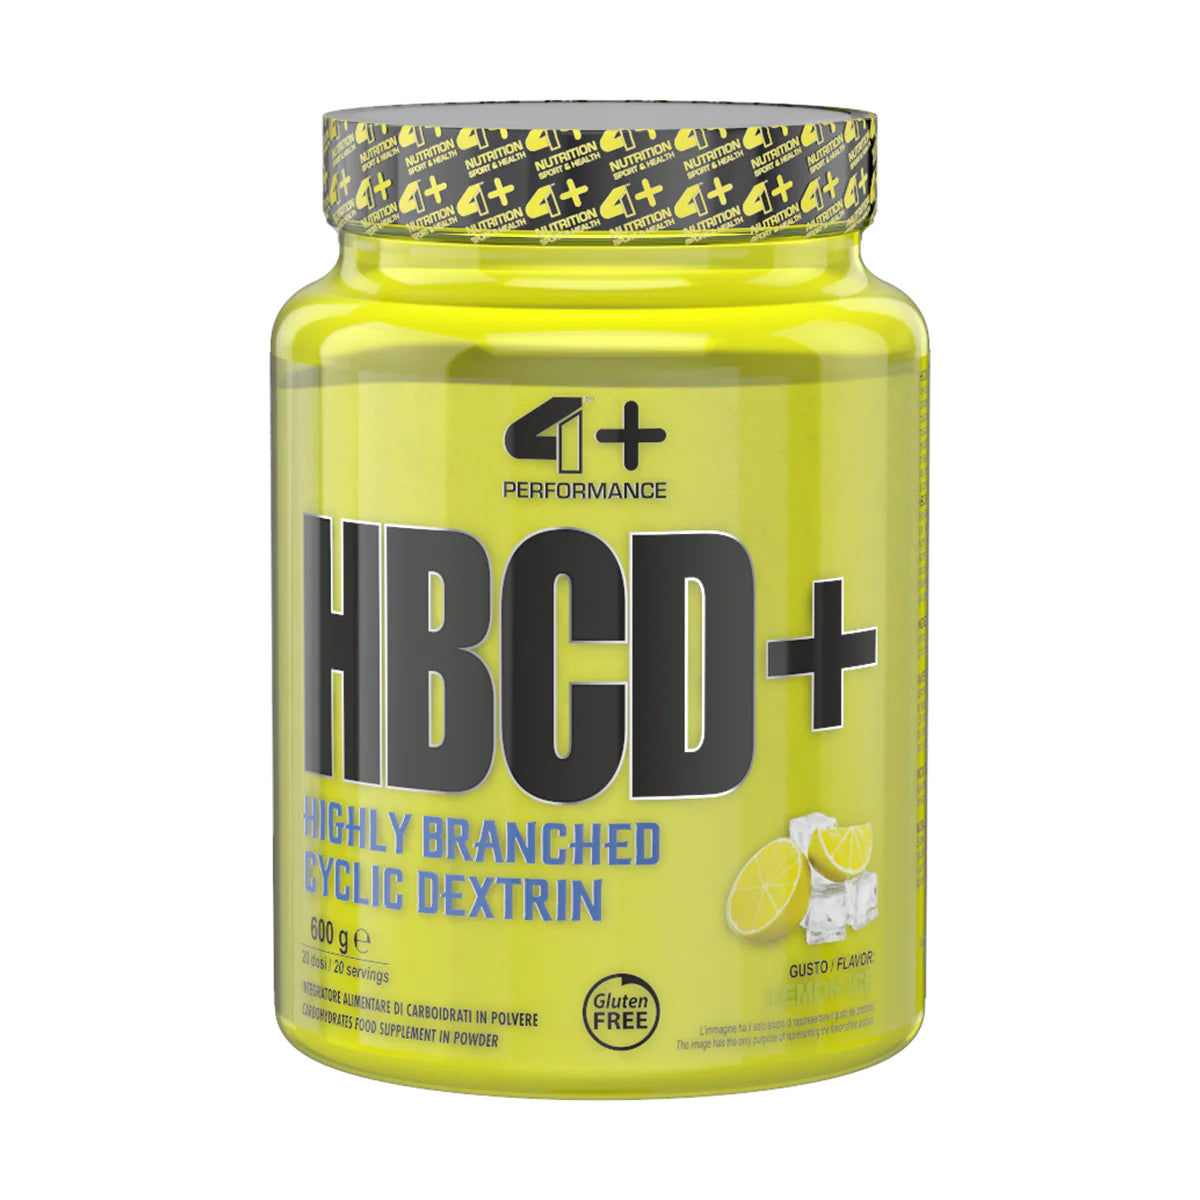 4+ HBCD + Nutrition